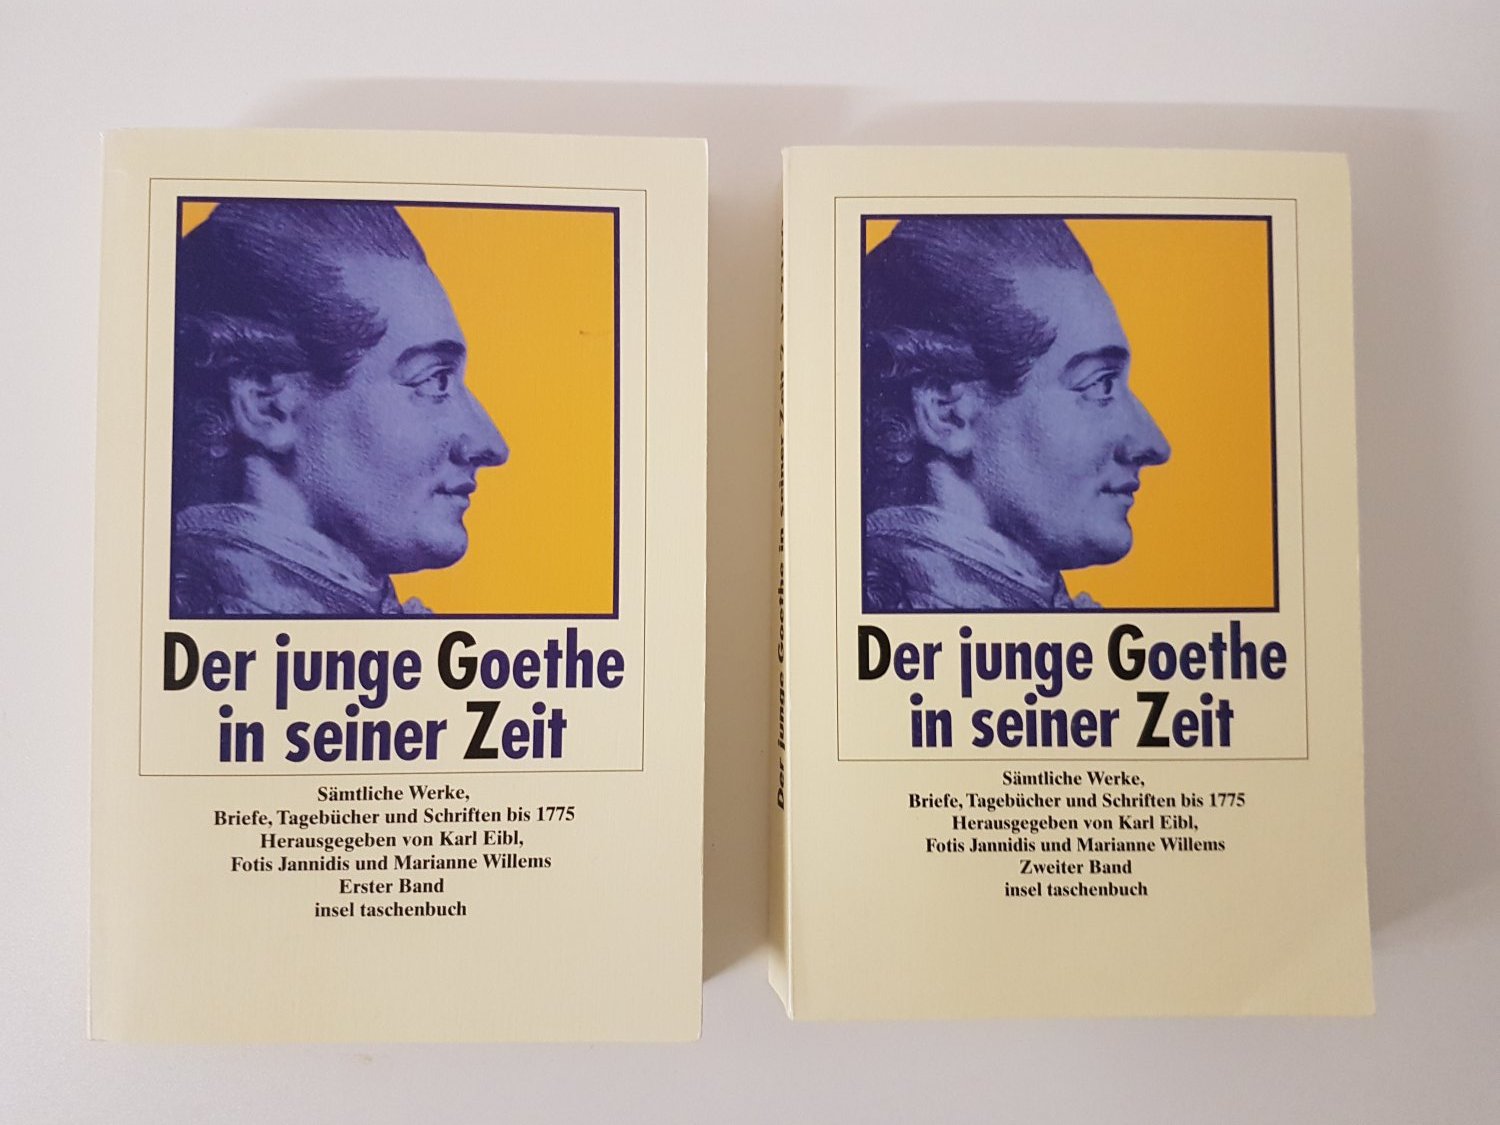 ISBN 9783458338000 "Der junge Goethe in seiner Zeit - Texte und